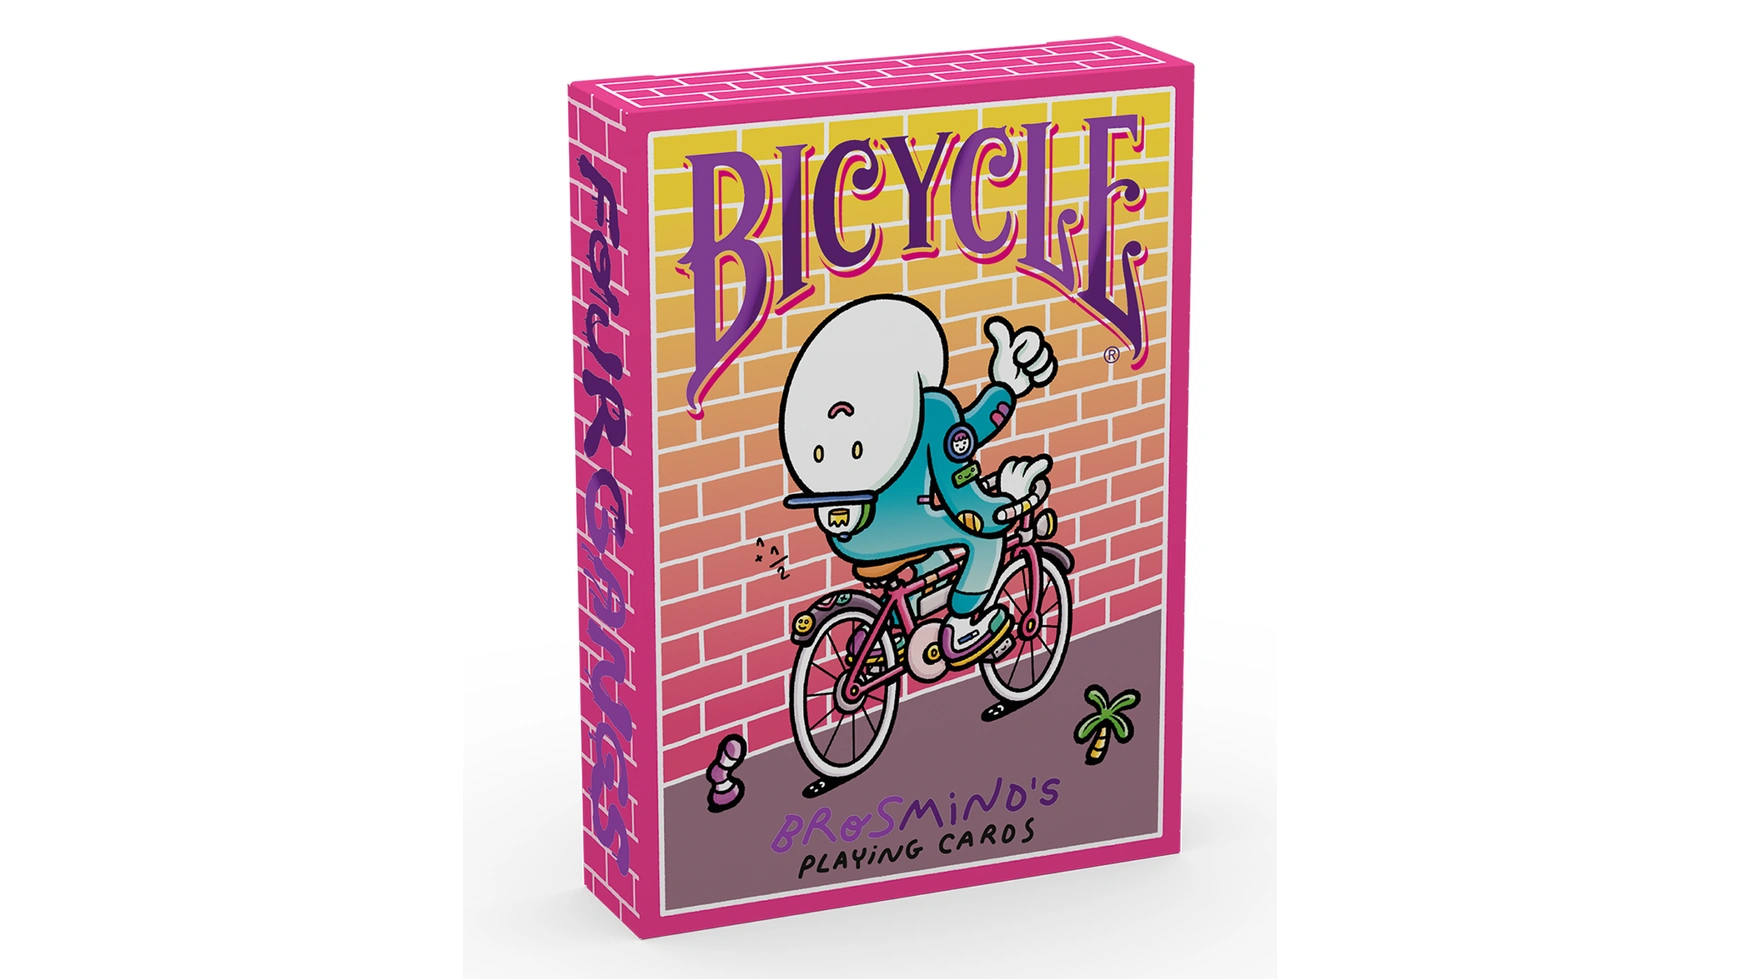 Bicycle Brosmind Four Gangs игральные карты bicycle dark mode темный режим